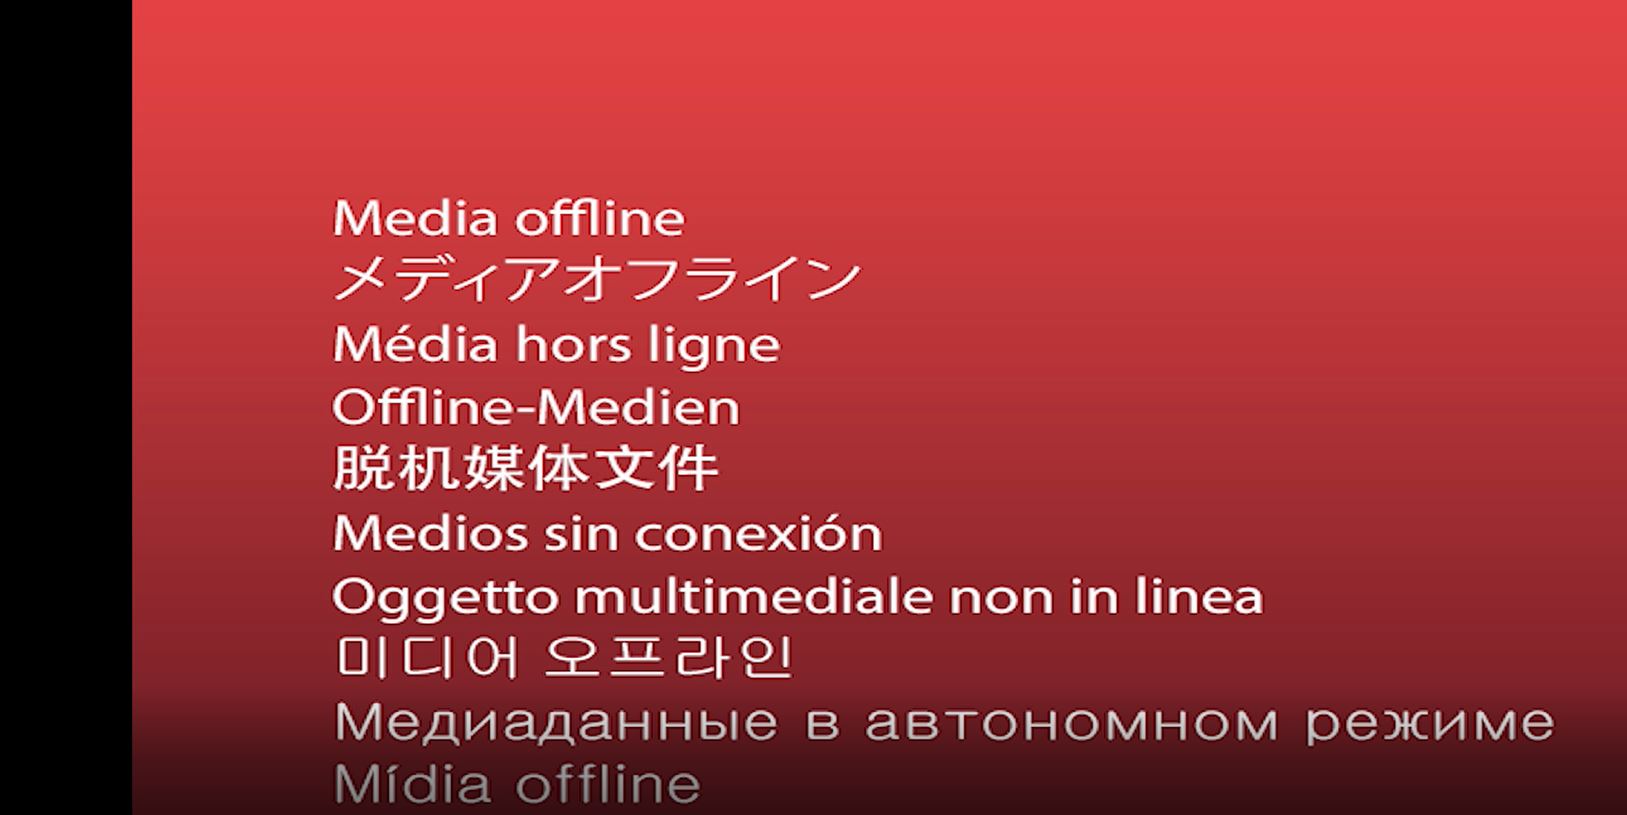 Media offline message.JPG